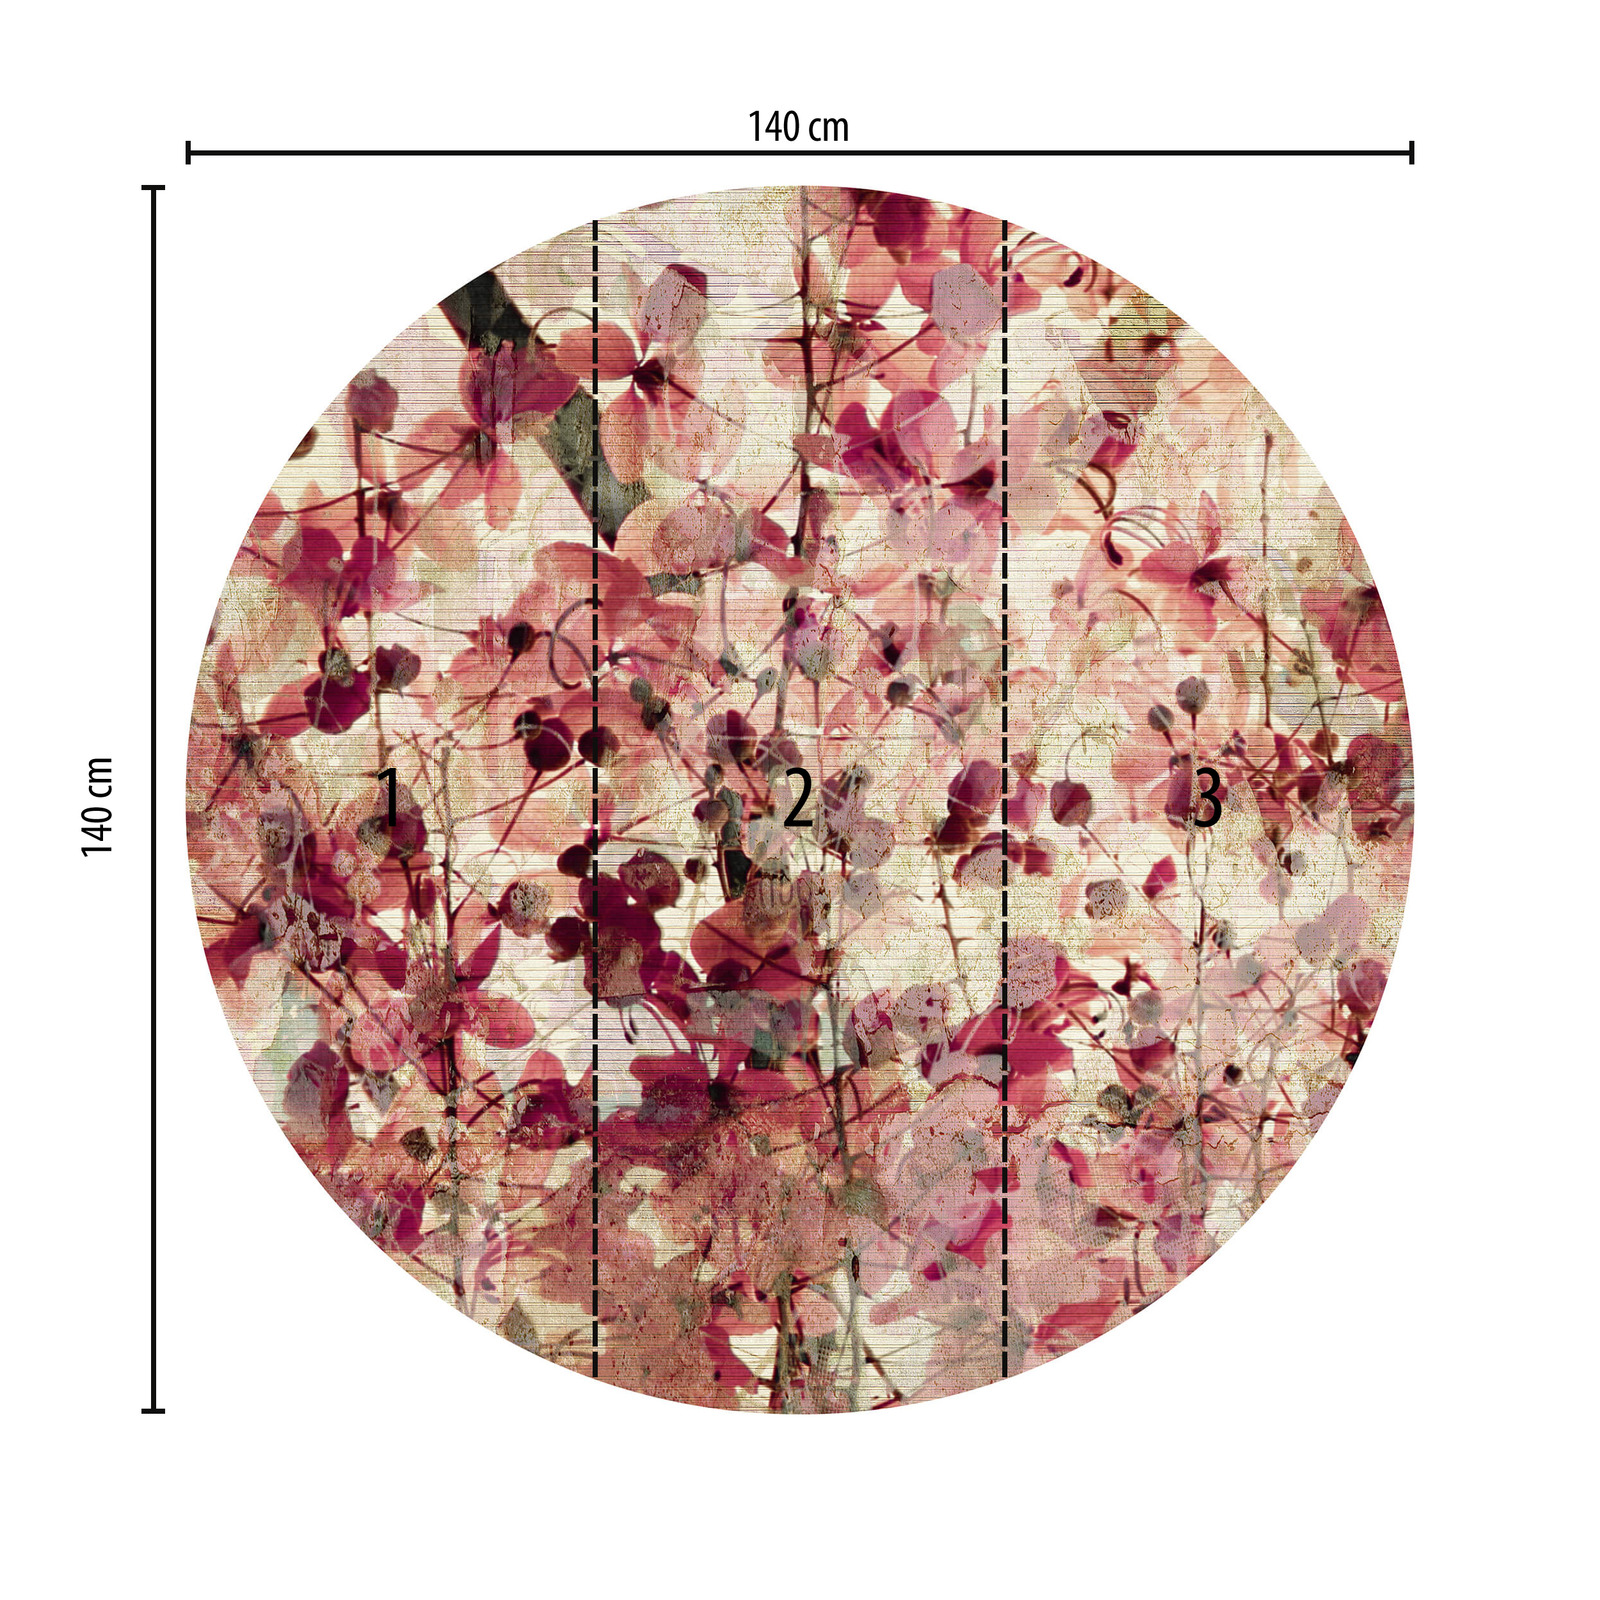             Papier peint panoramique rond motif floral style vintage
        